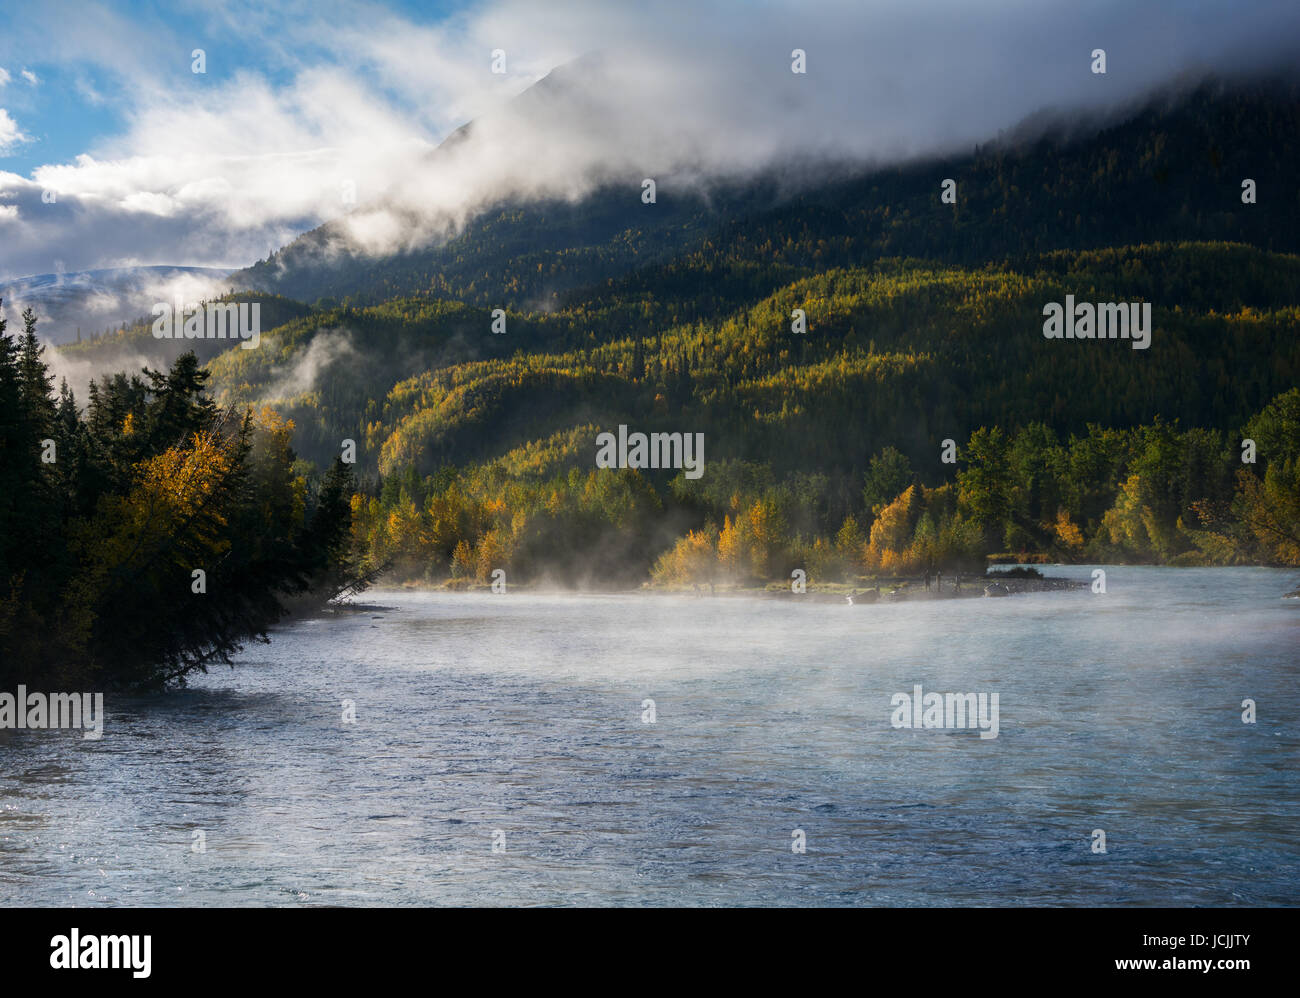 L'eau chaude provoque un brouillard d'augmenter sur le fleuve russe dans le centre sud de l'Alaska. Banque D'Images